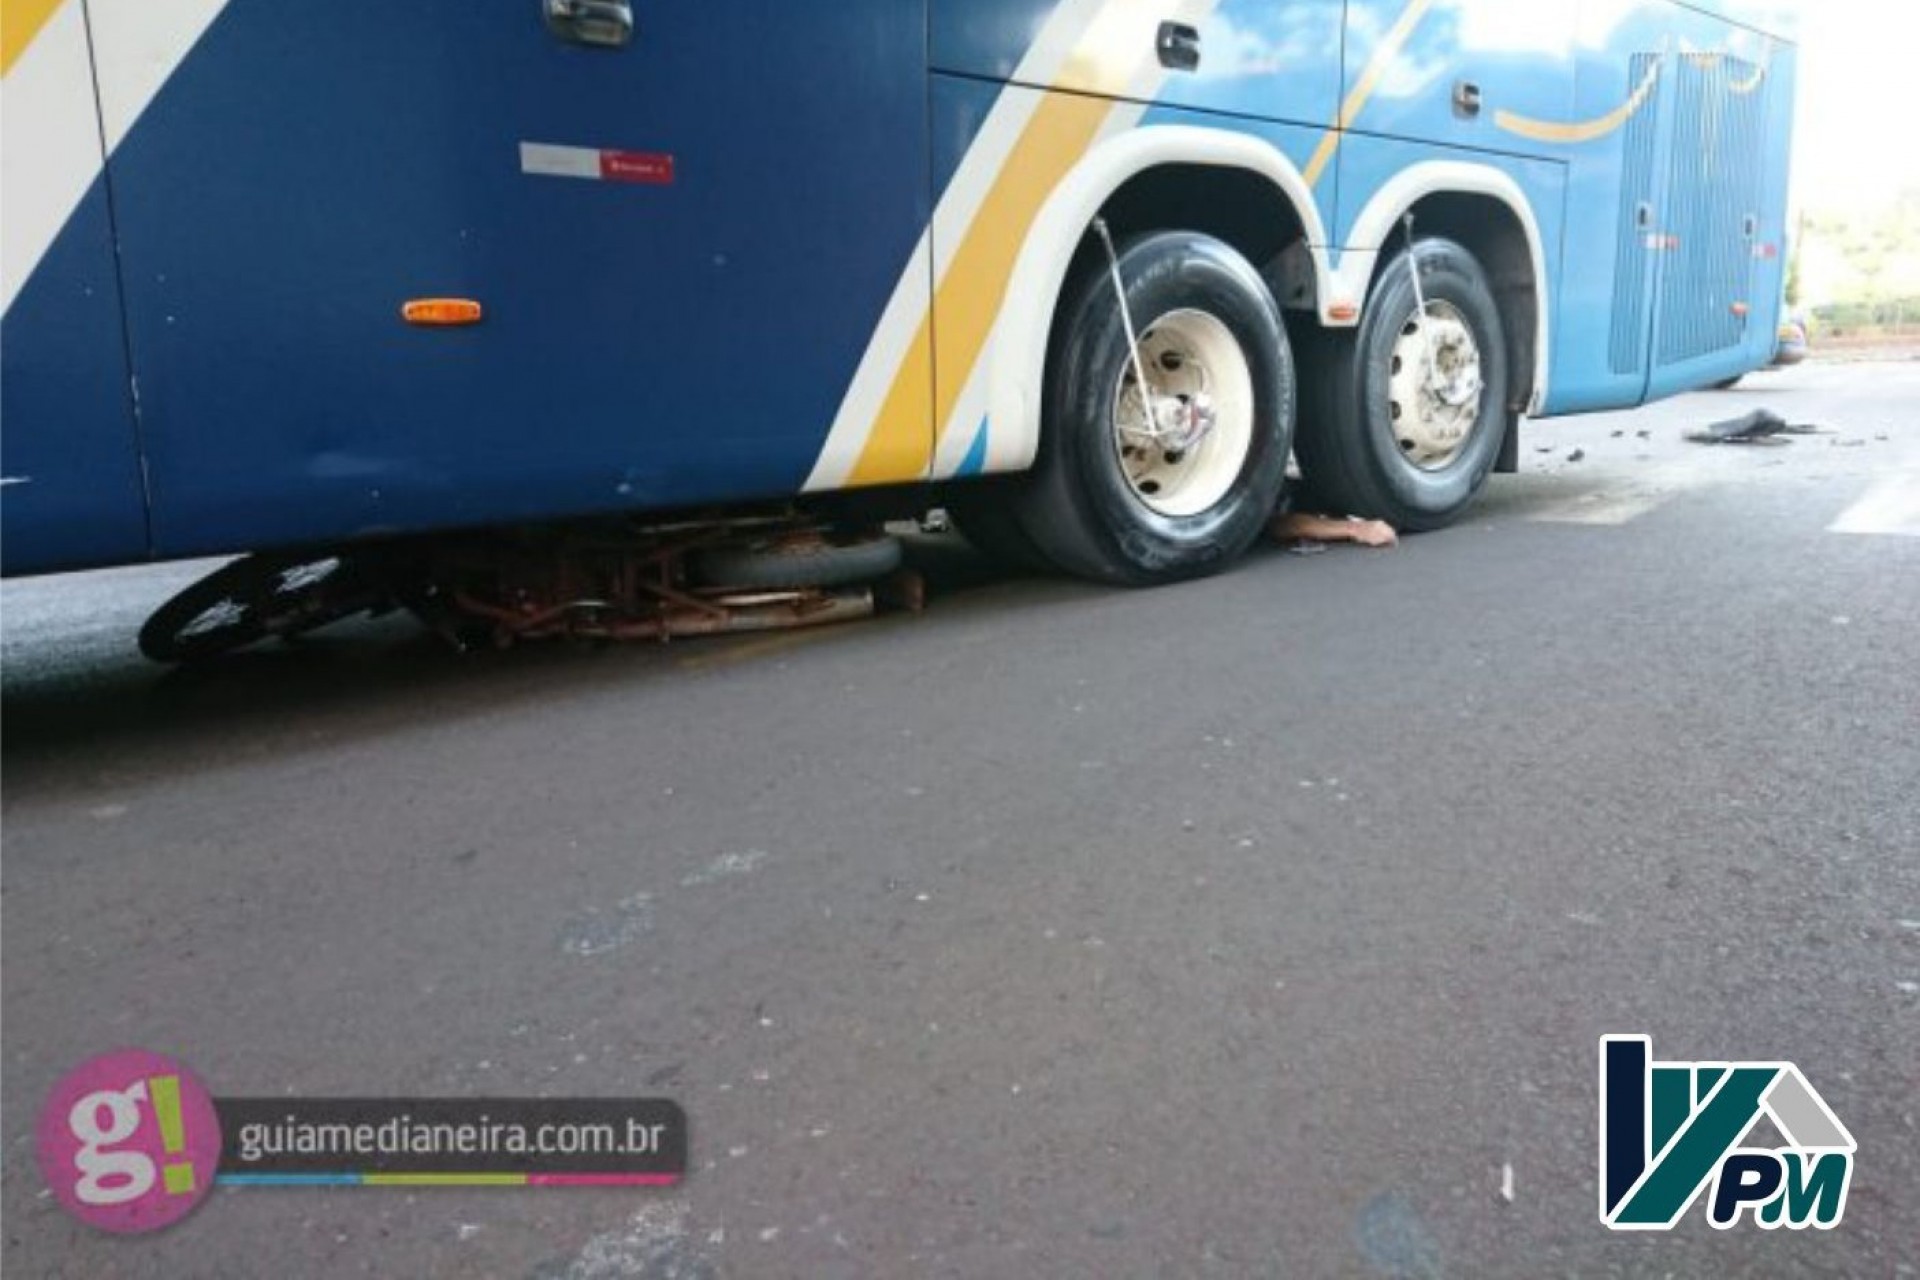 Motociclista morre após colidir em ônibus e ser atropelado no centro de Medianeira